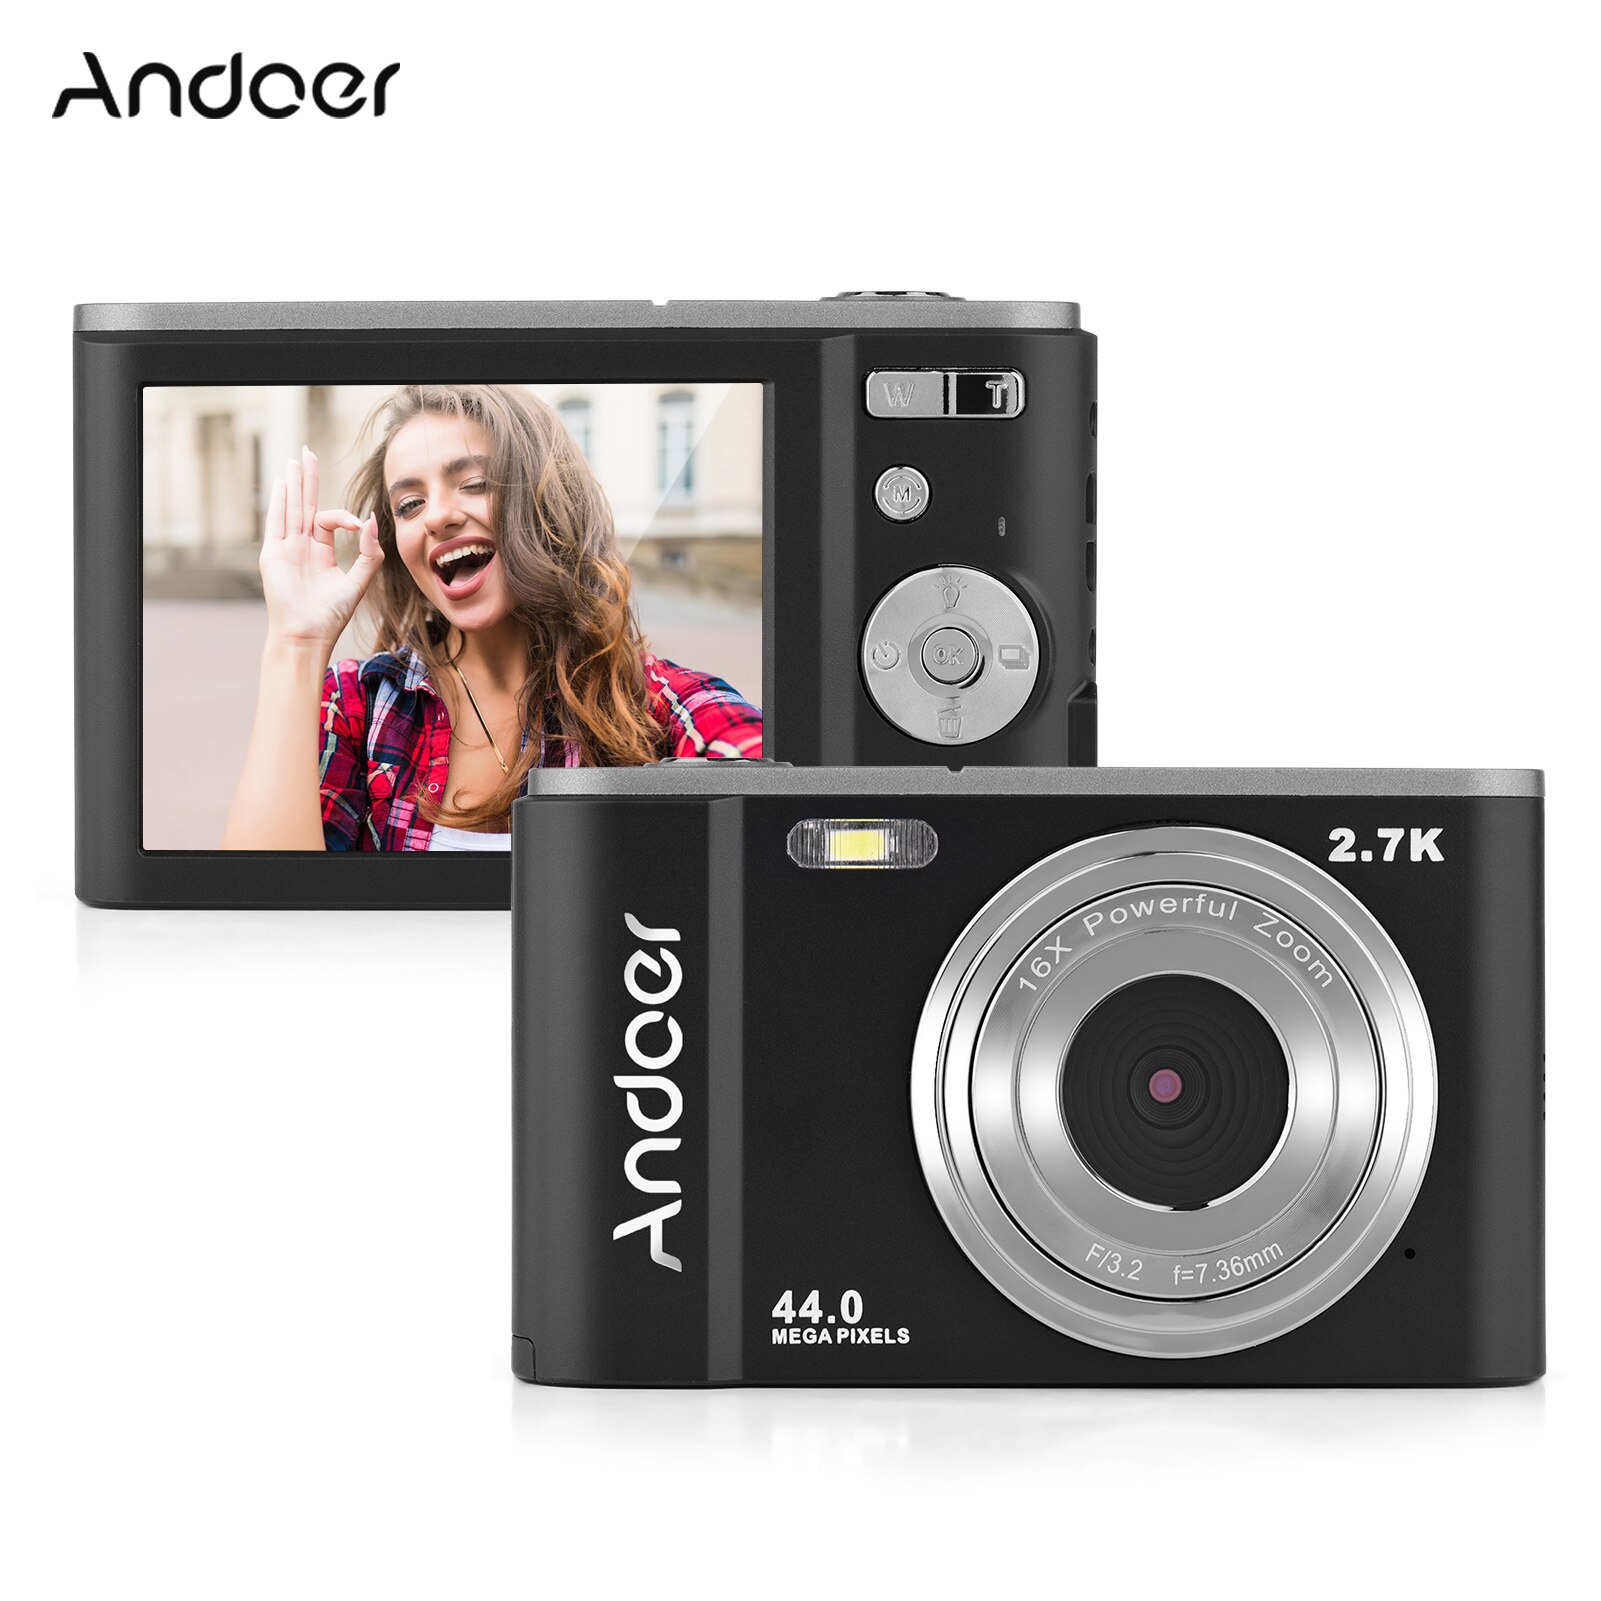 Foto Mini fotocamera digitale 44MP 2.7K 16X Zoom autoscatto 128GB memoria estesa rilevamento del viso batterie integrate anti-agitazione